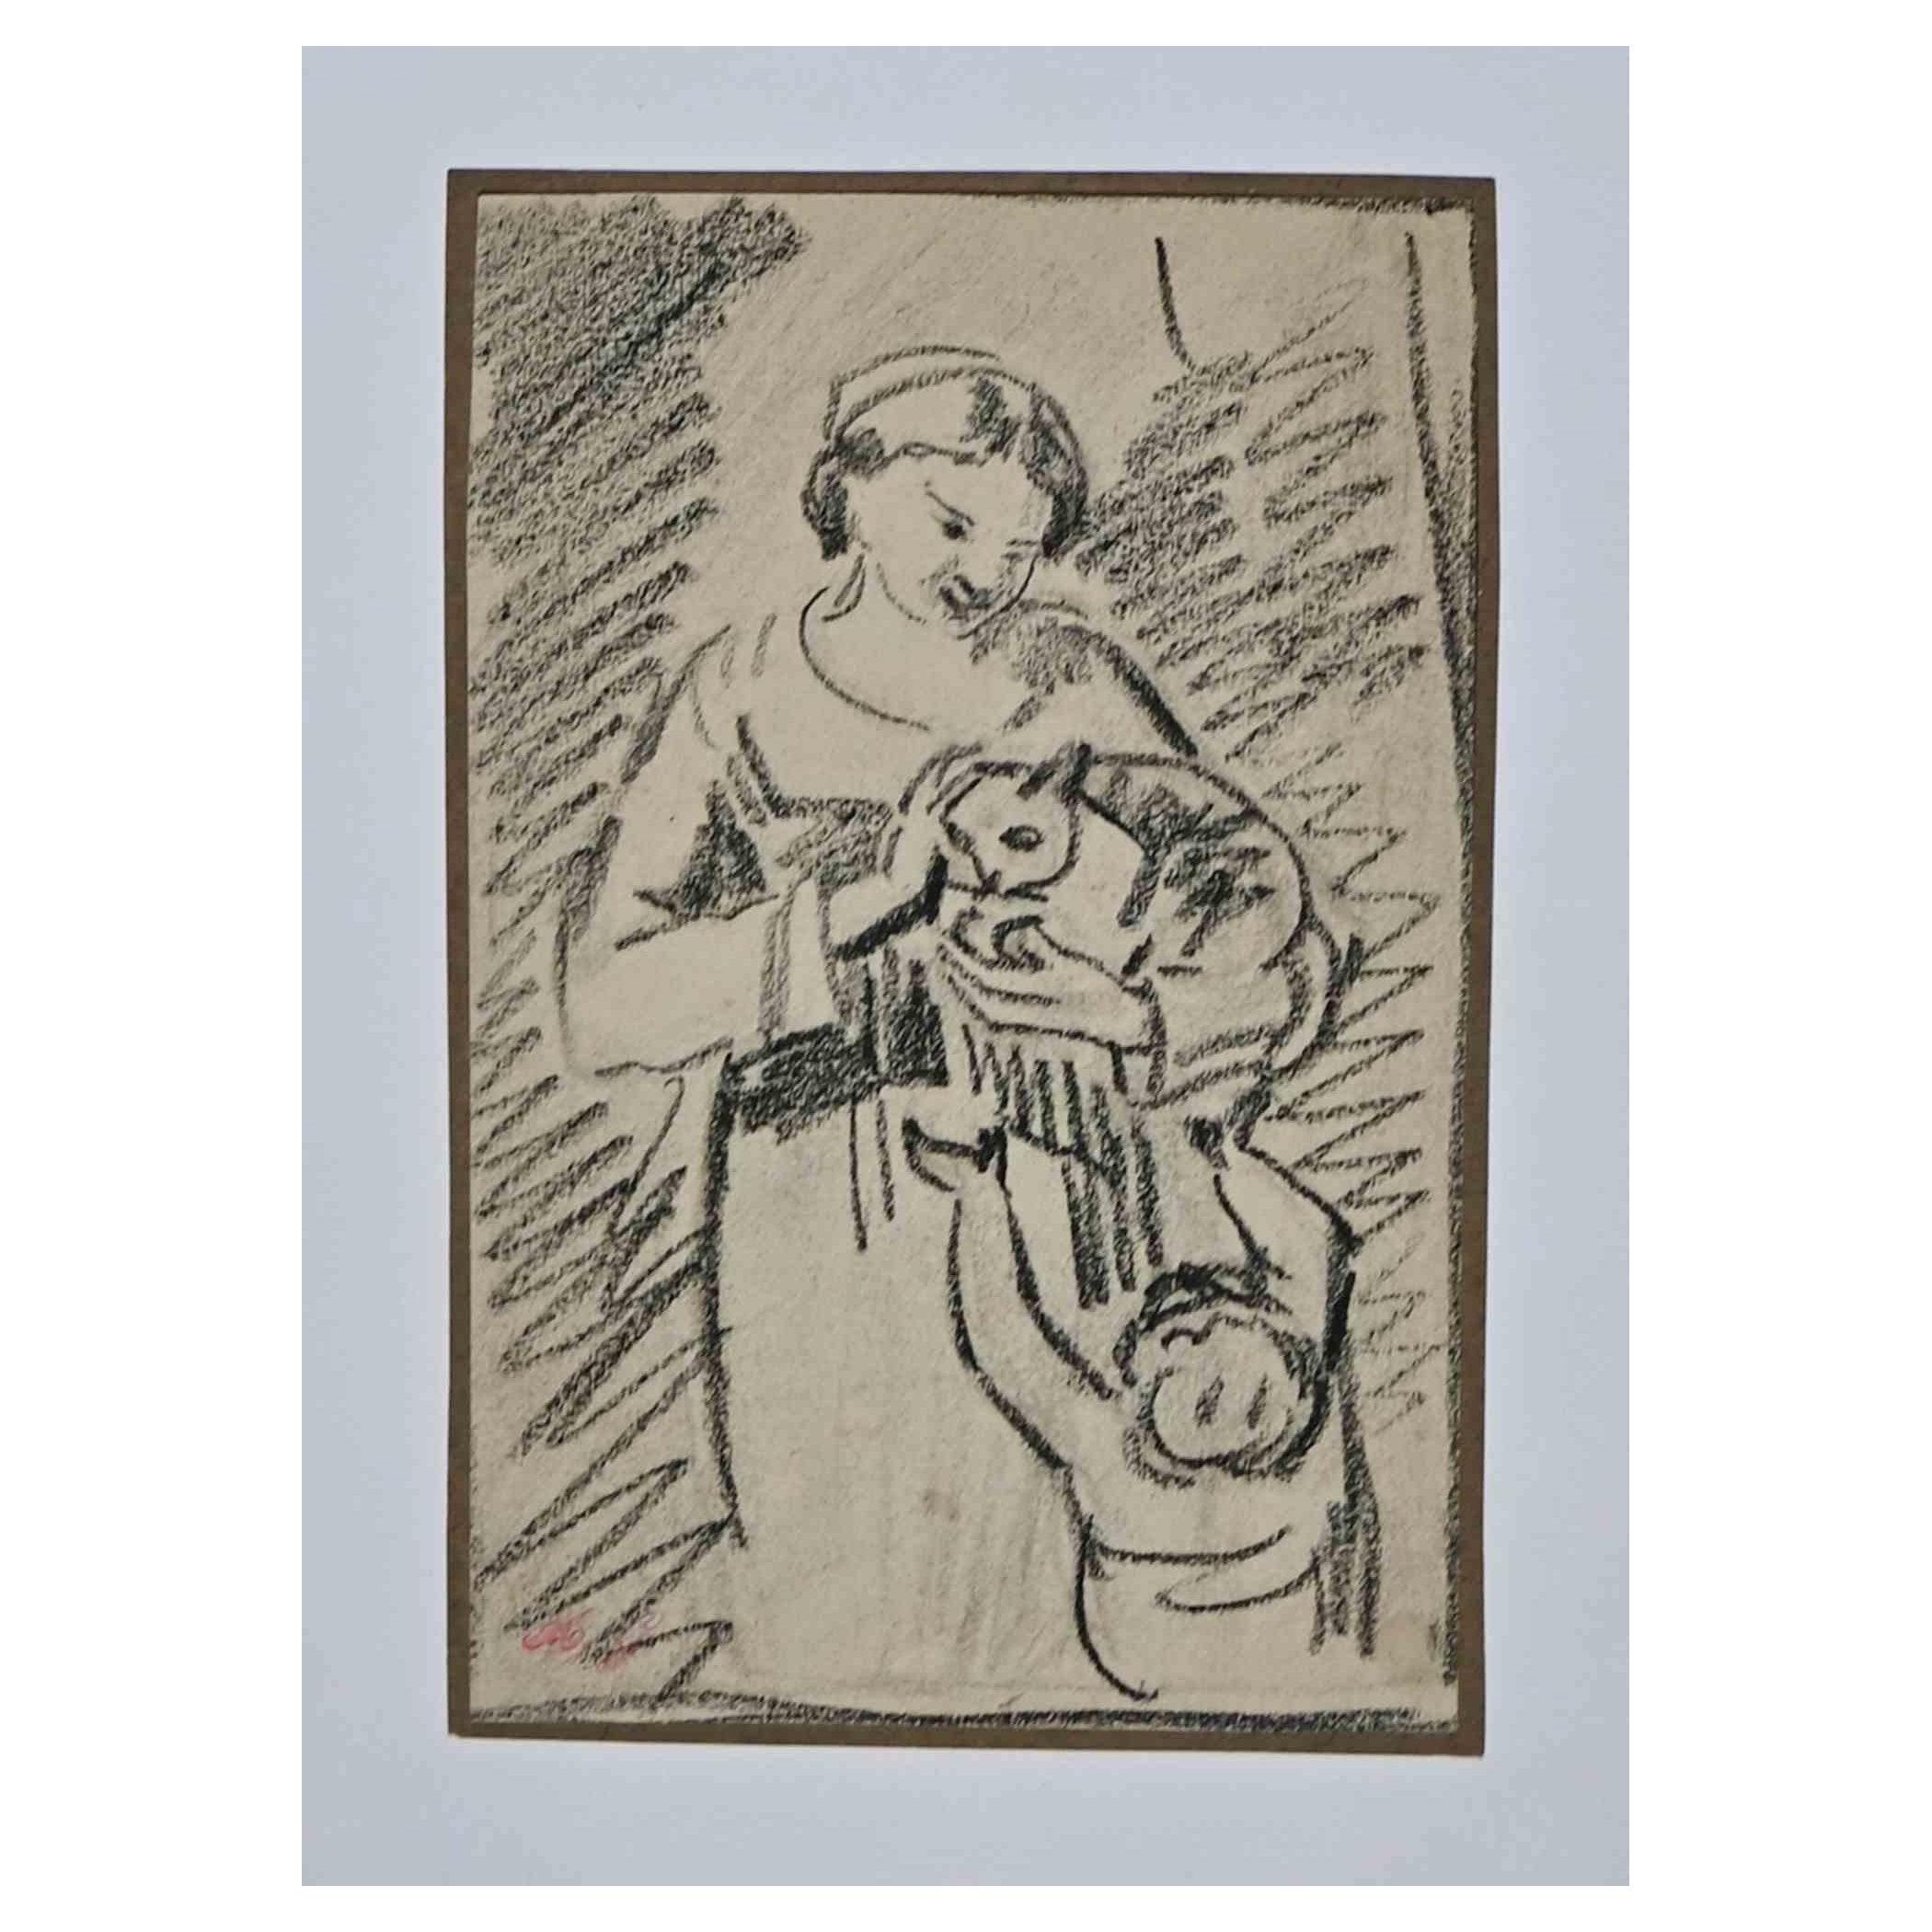 La femme est un dessin original au fusain réalisé par Armand Gautier au 19ème siècle.

Bonnes conditions.

L'œuvre d'art est représentée par des traits habiles et maîtrisés.
